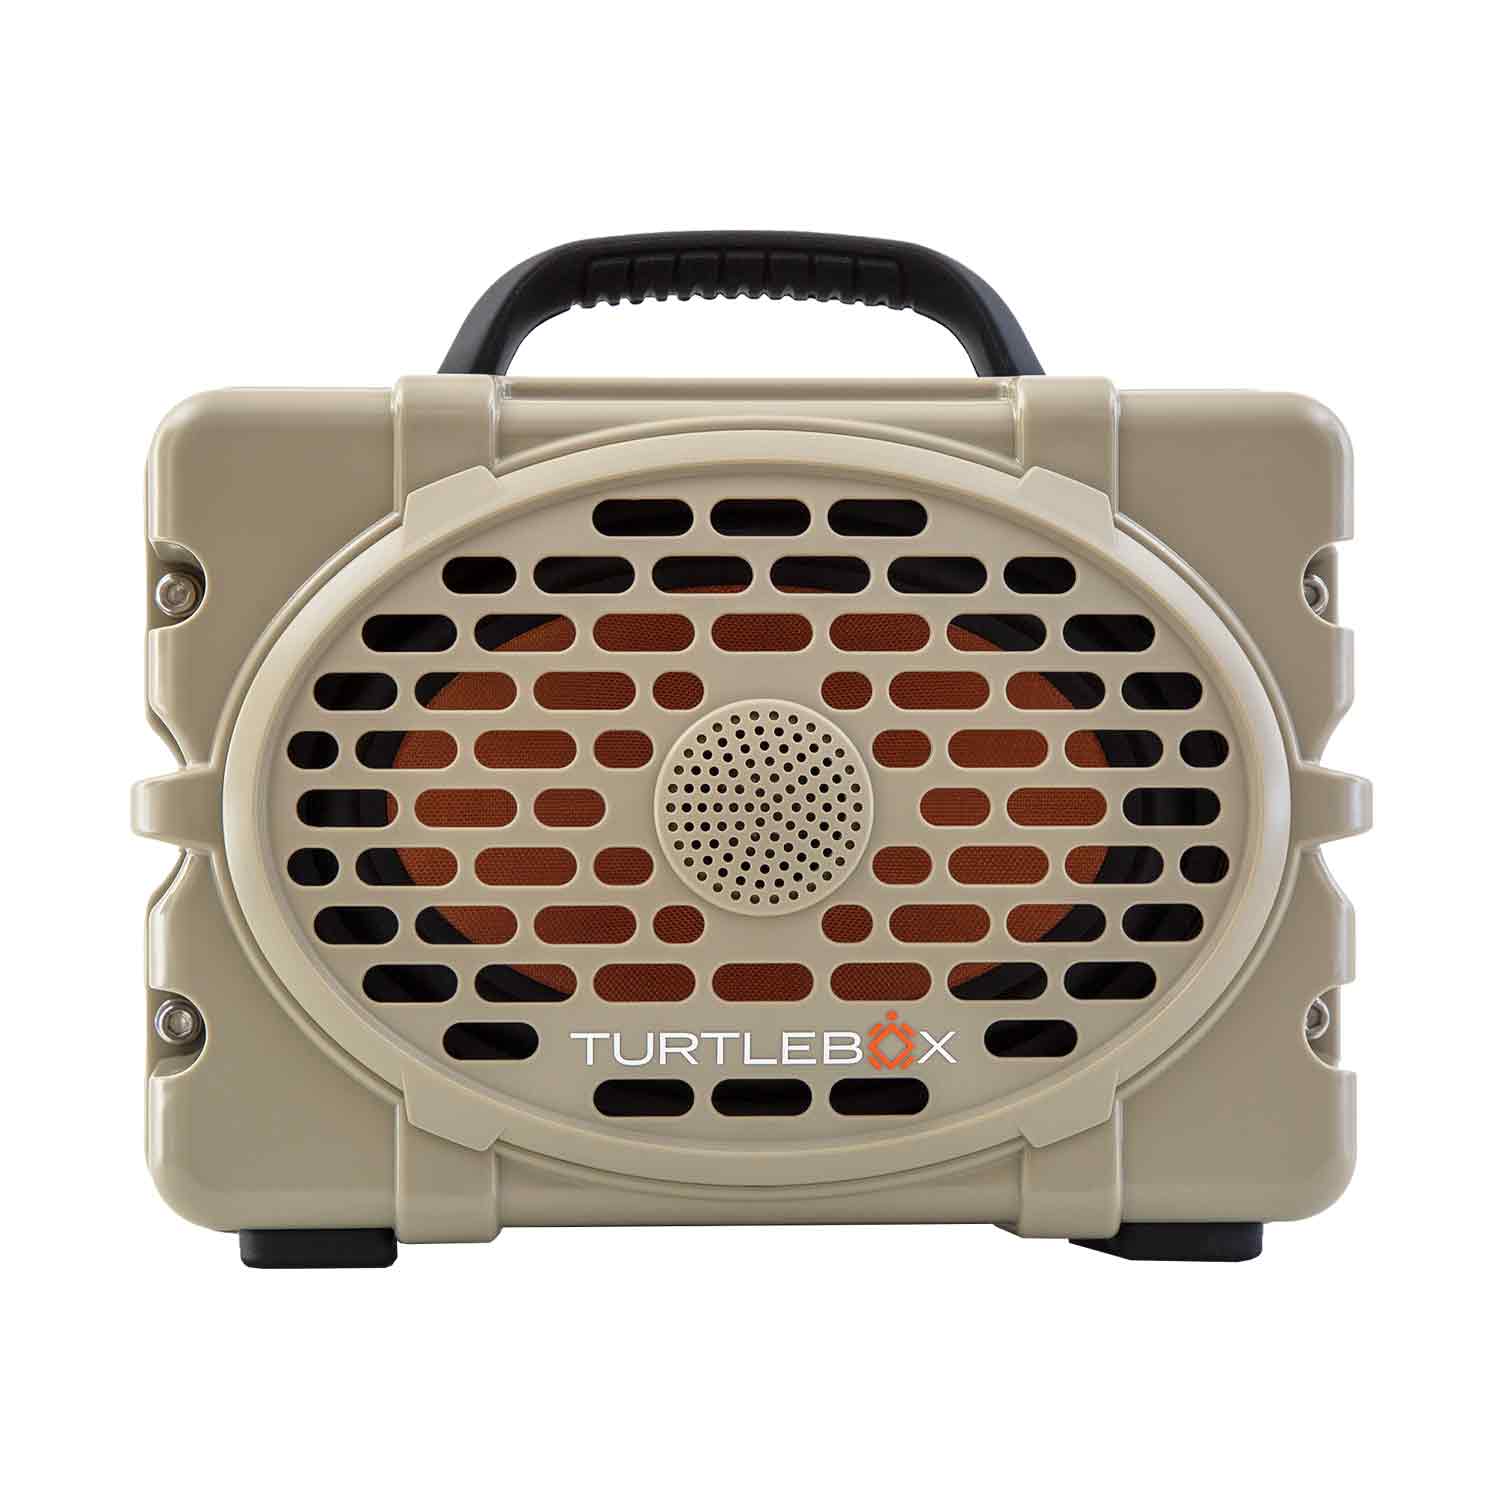 Turtlebox Gen2 Outdoor Speaker